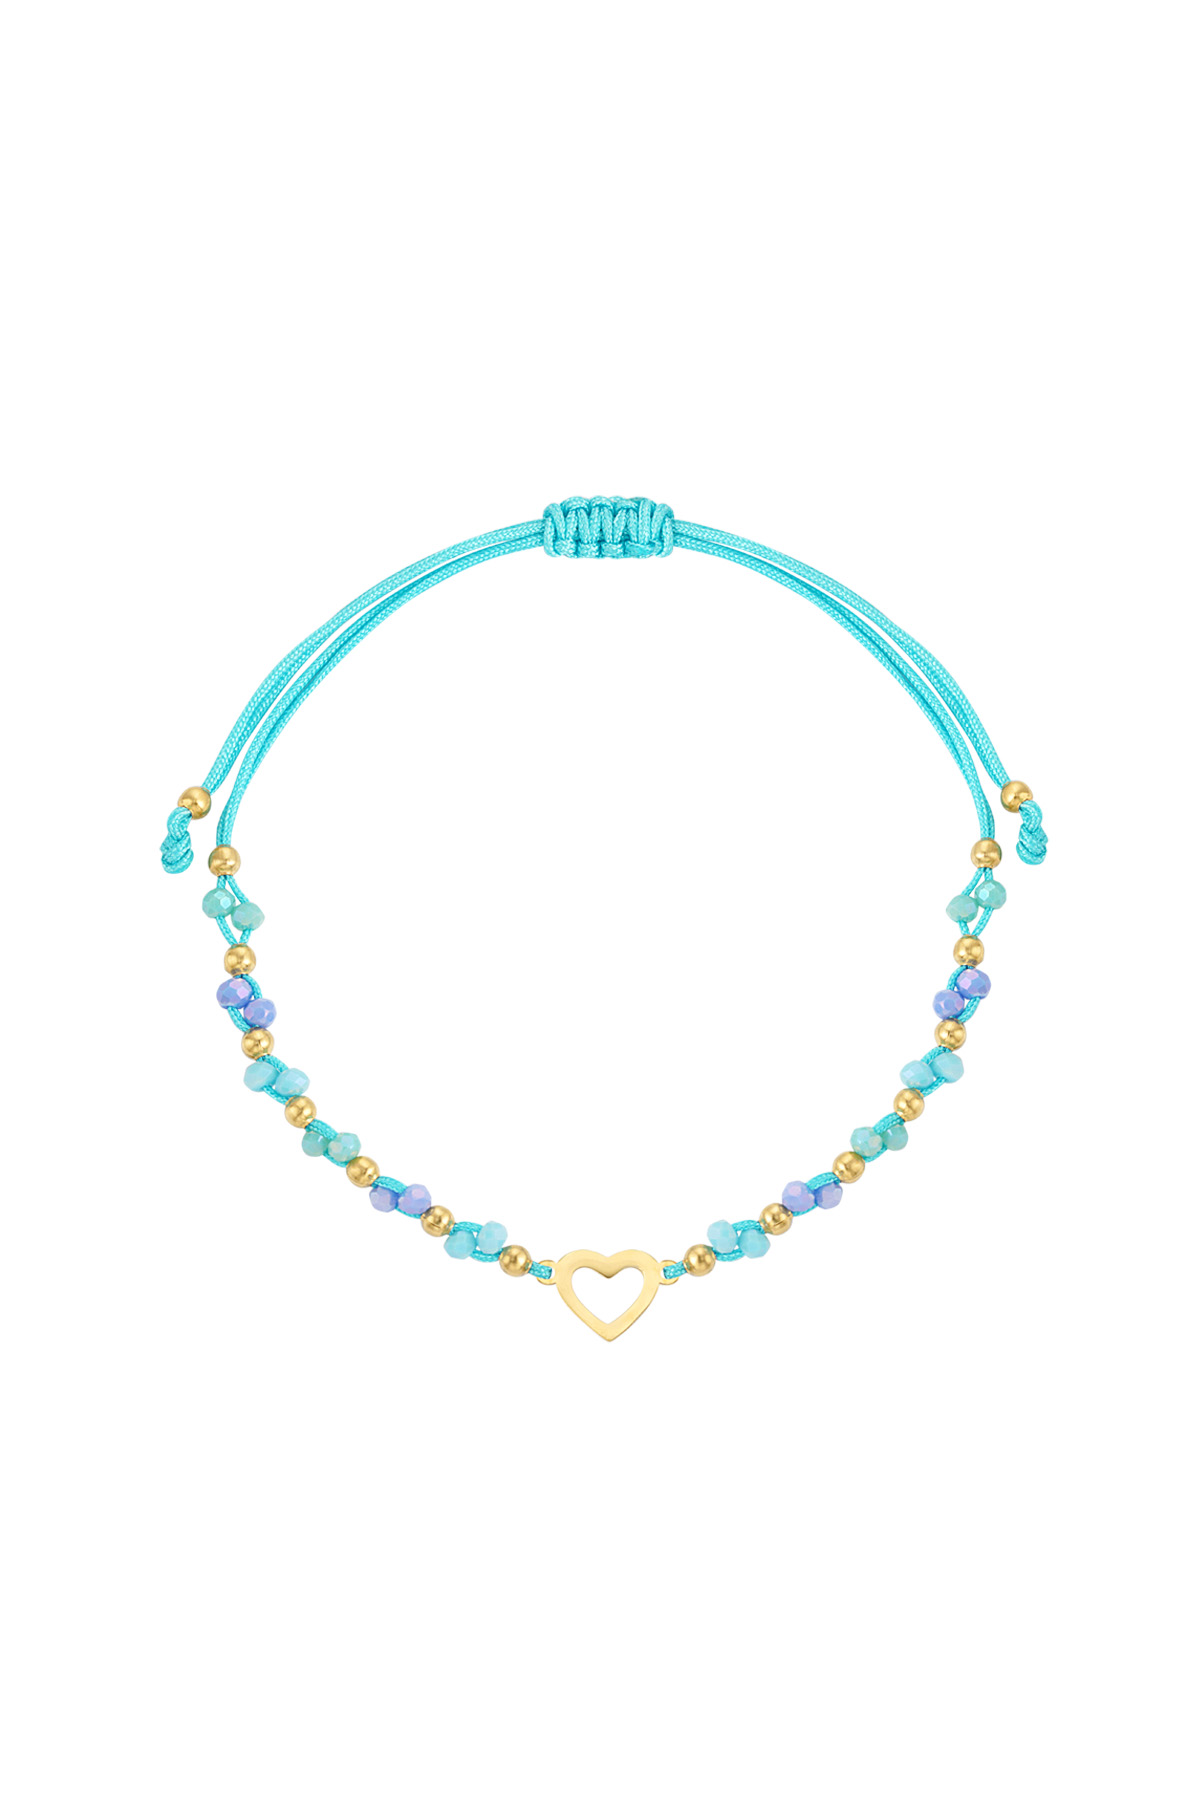 Summer bracelet colorful heart - blue gold h5 